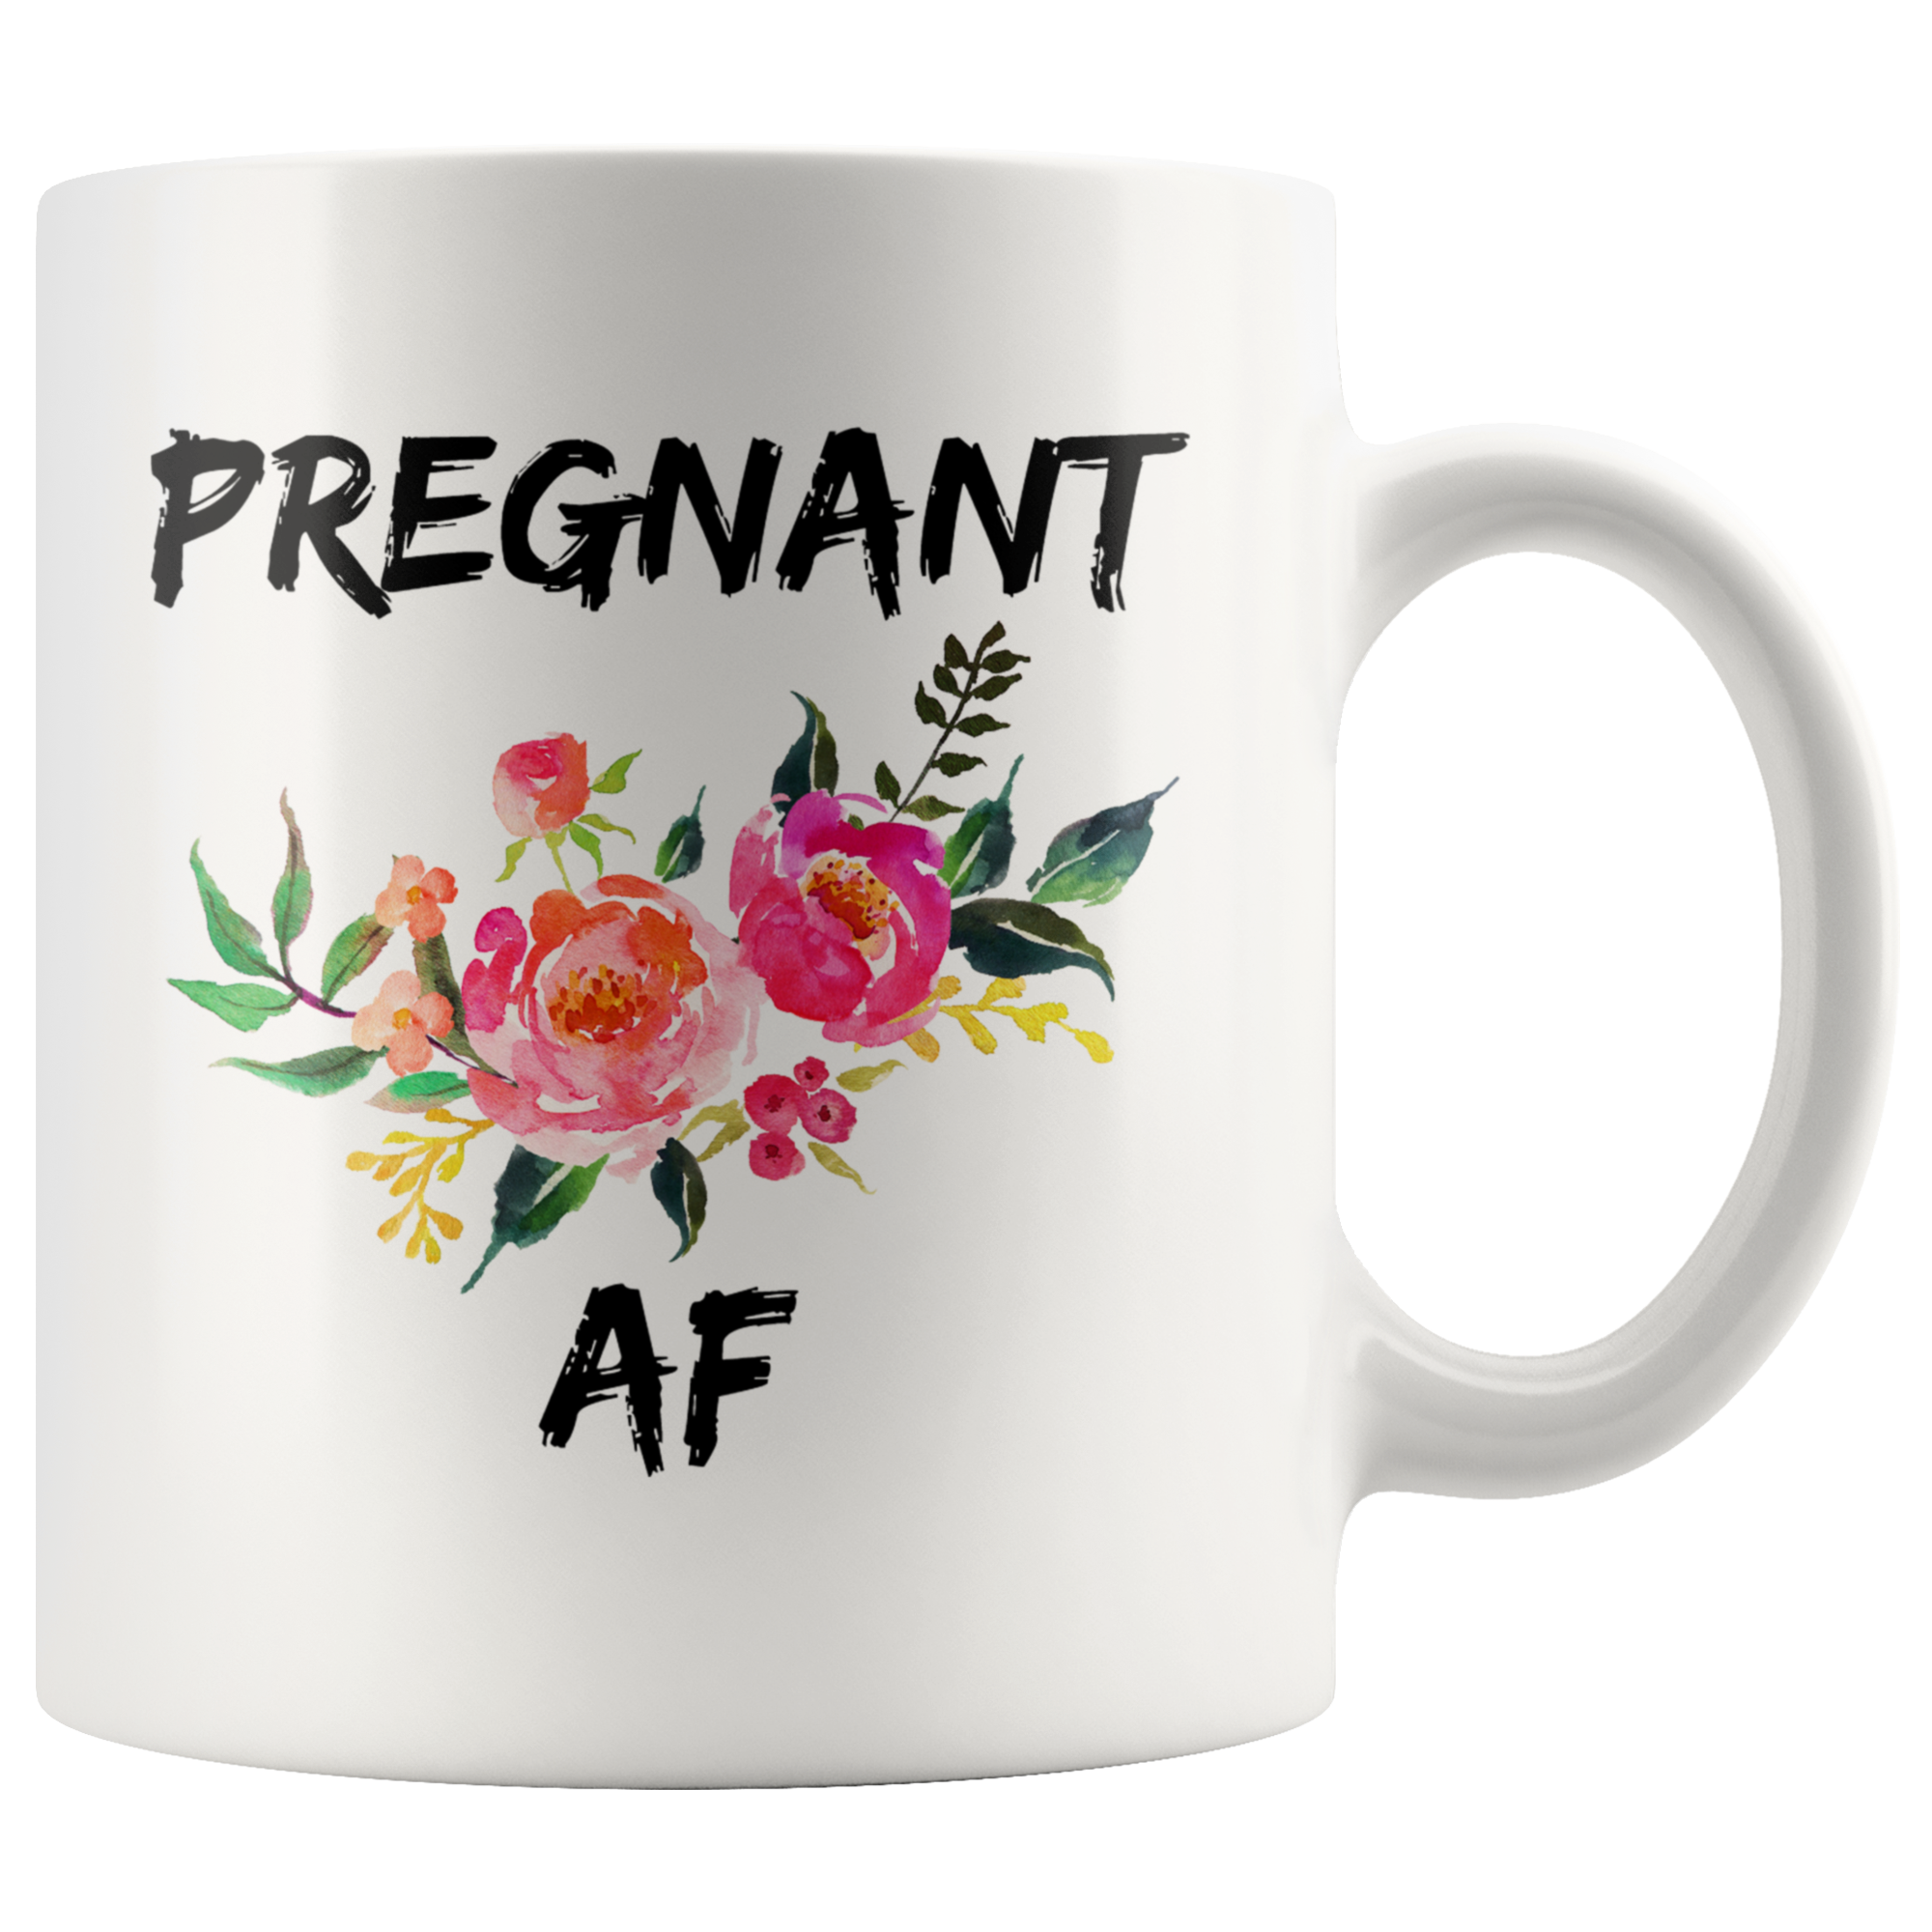 Pregnant AF Funny Mug